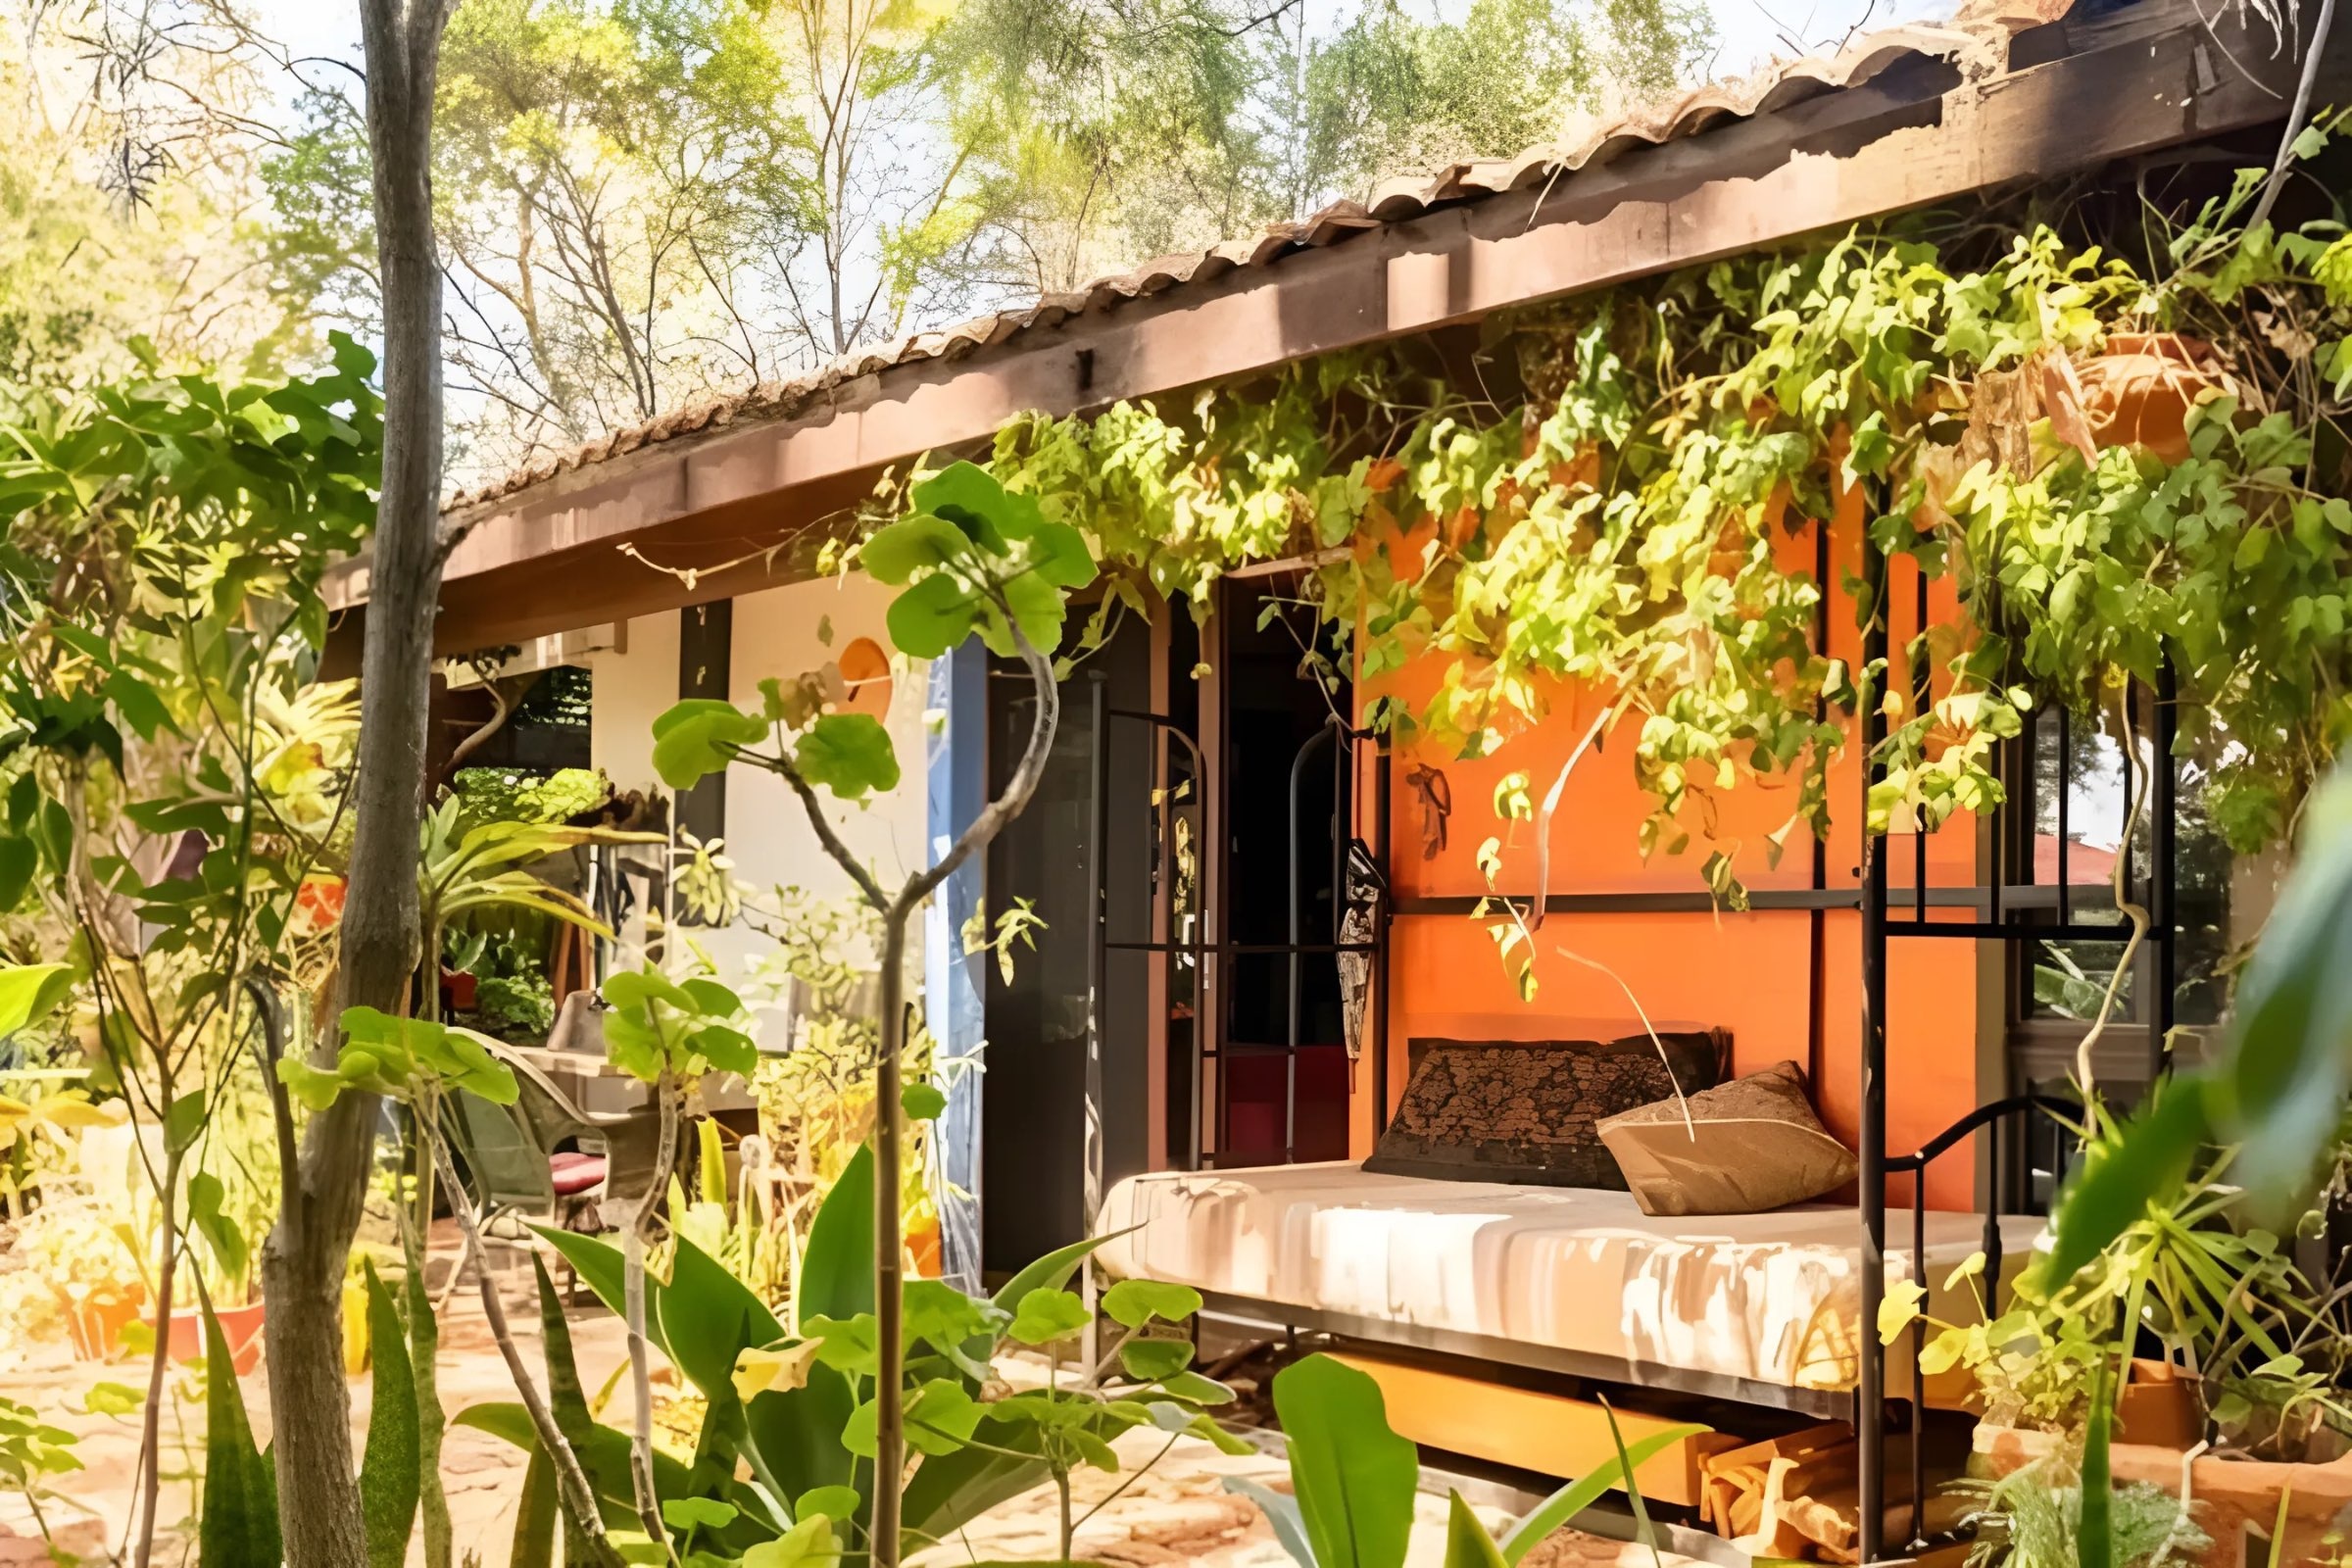 Phòng Airbnb không có gì ngoài 1 cái giường, 2 cái màn ở Australia - ảnh 2